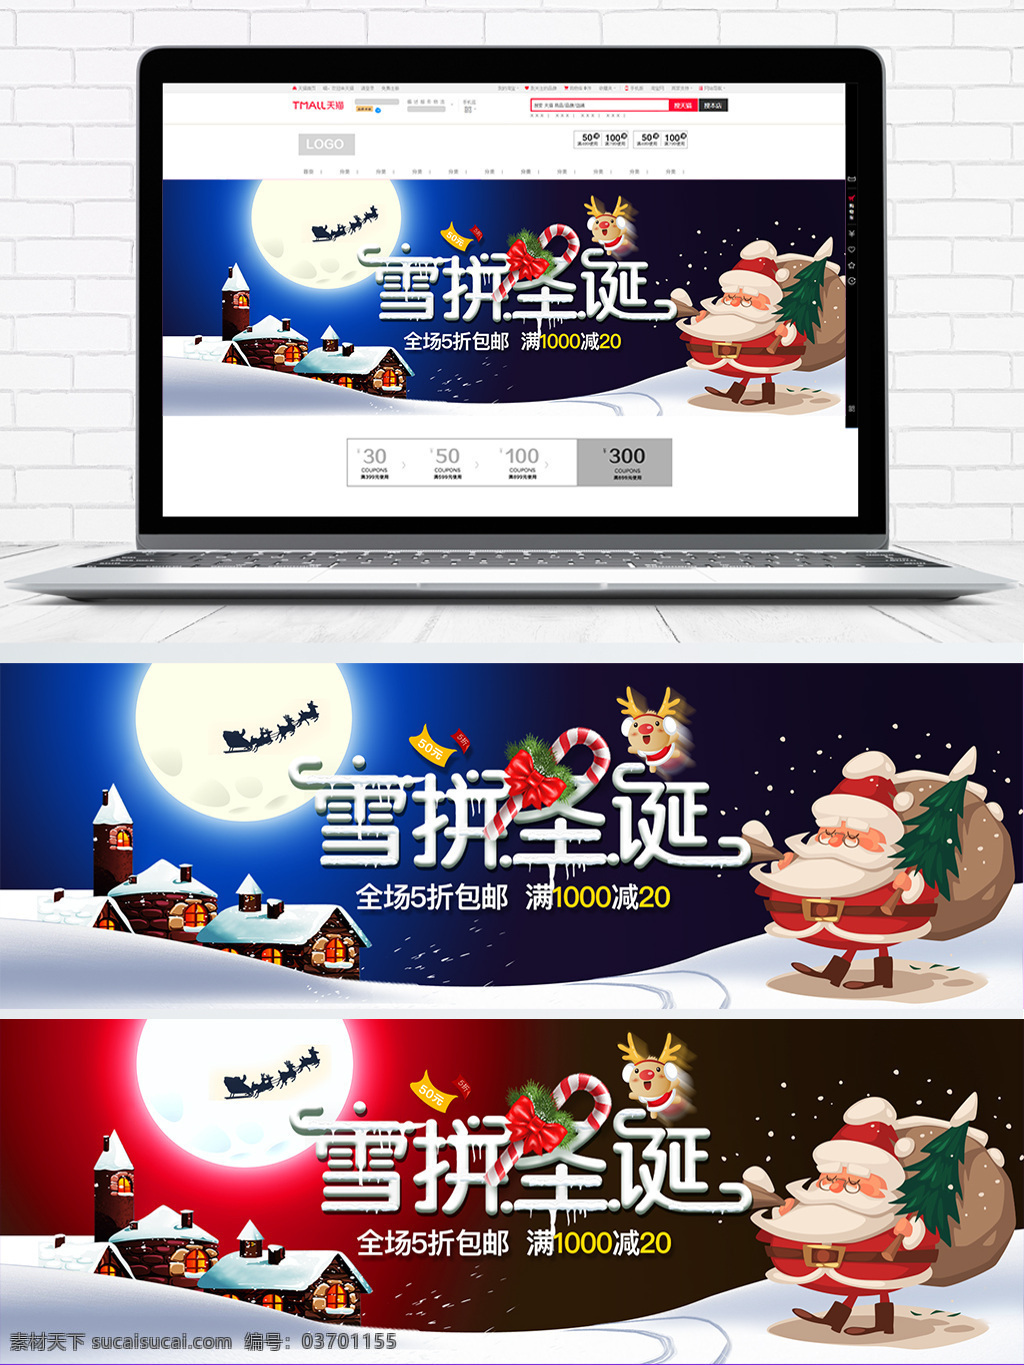 圣诞老人 促销 圣诞节 通用 淘宝 电商 海报 圣诞节海报 banner 全 屏 模板 全屏海报 麋鹿